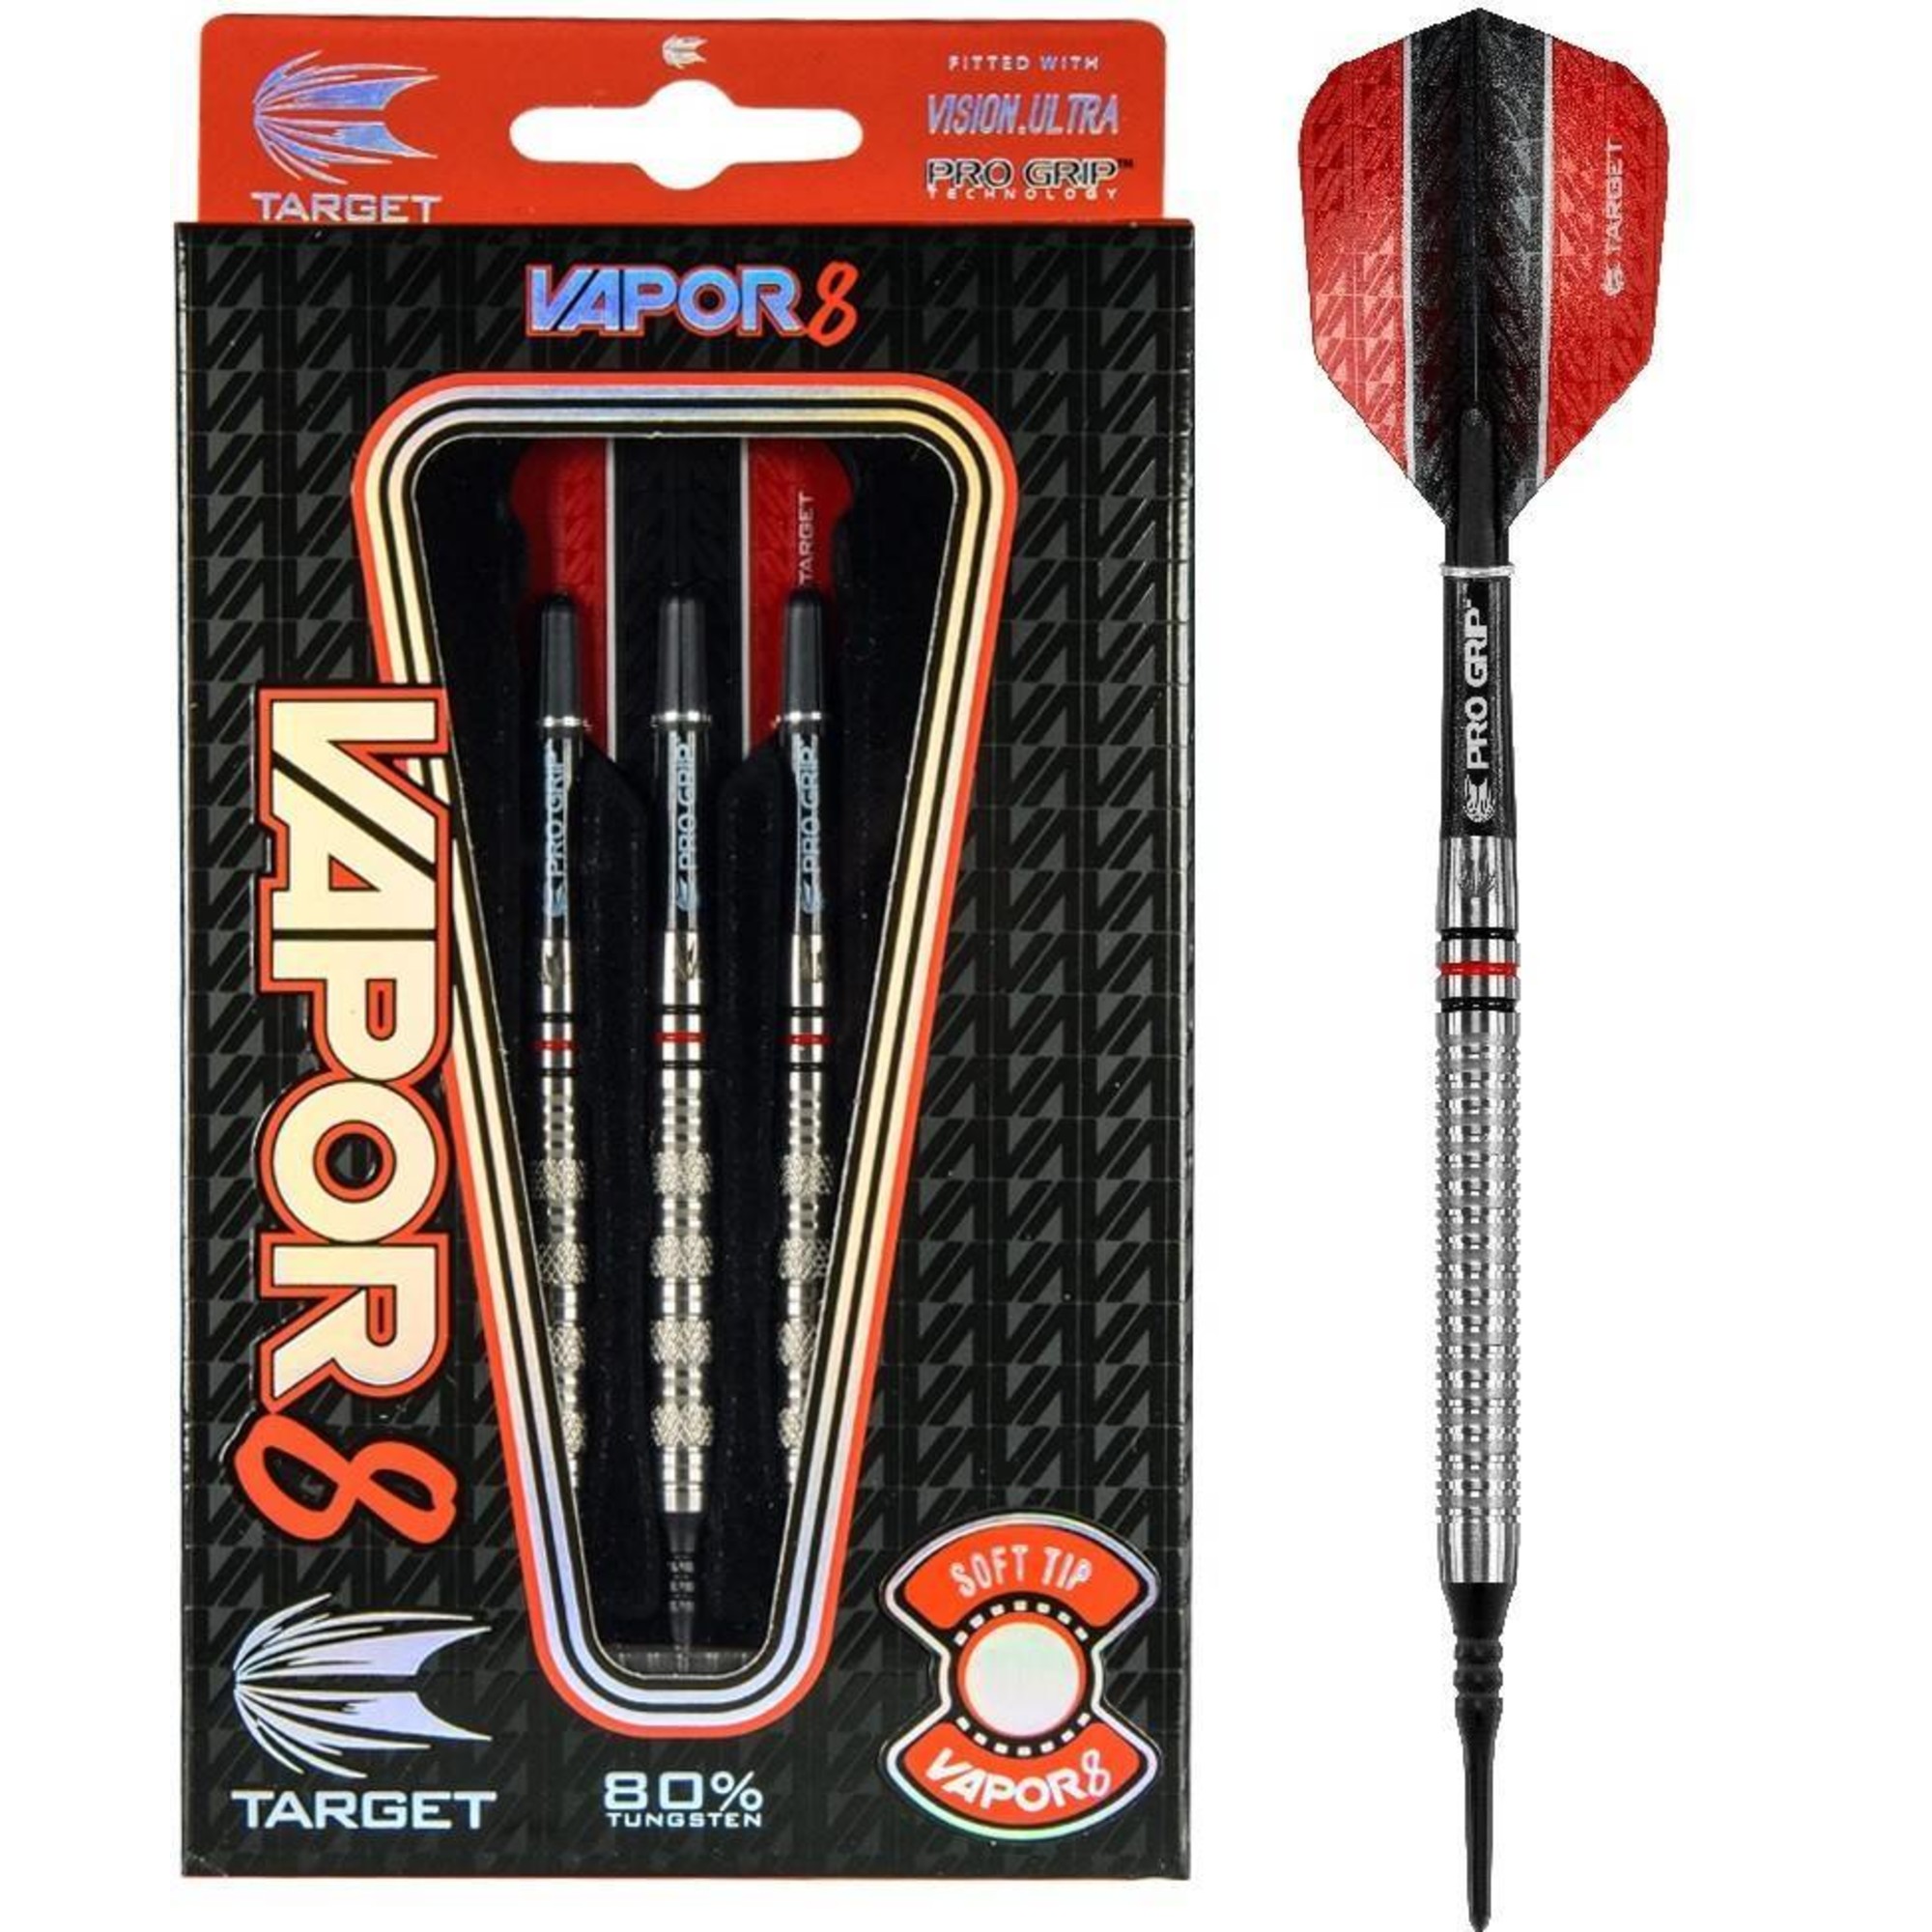 target vapor 8 darts